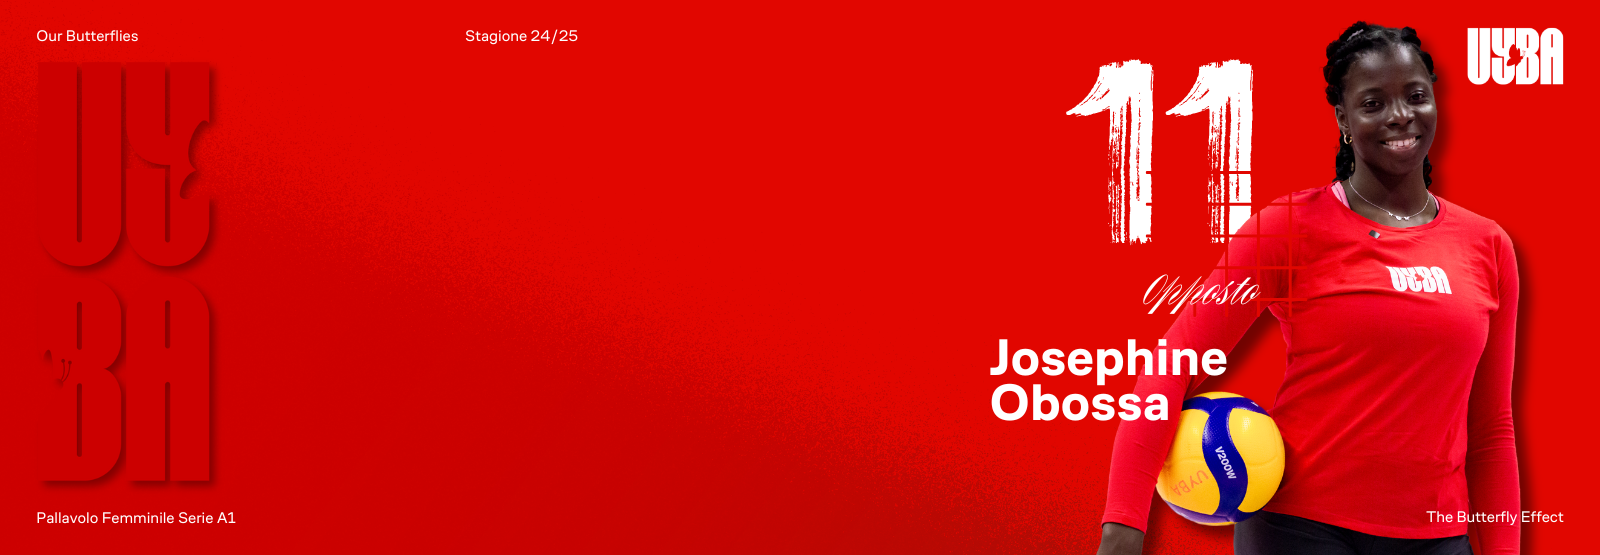 Josephine Obossa arriva a Busto: Voglio essere una protagonista